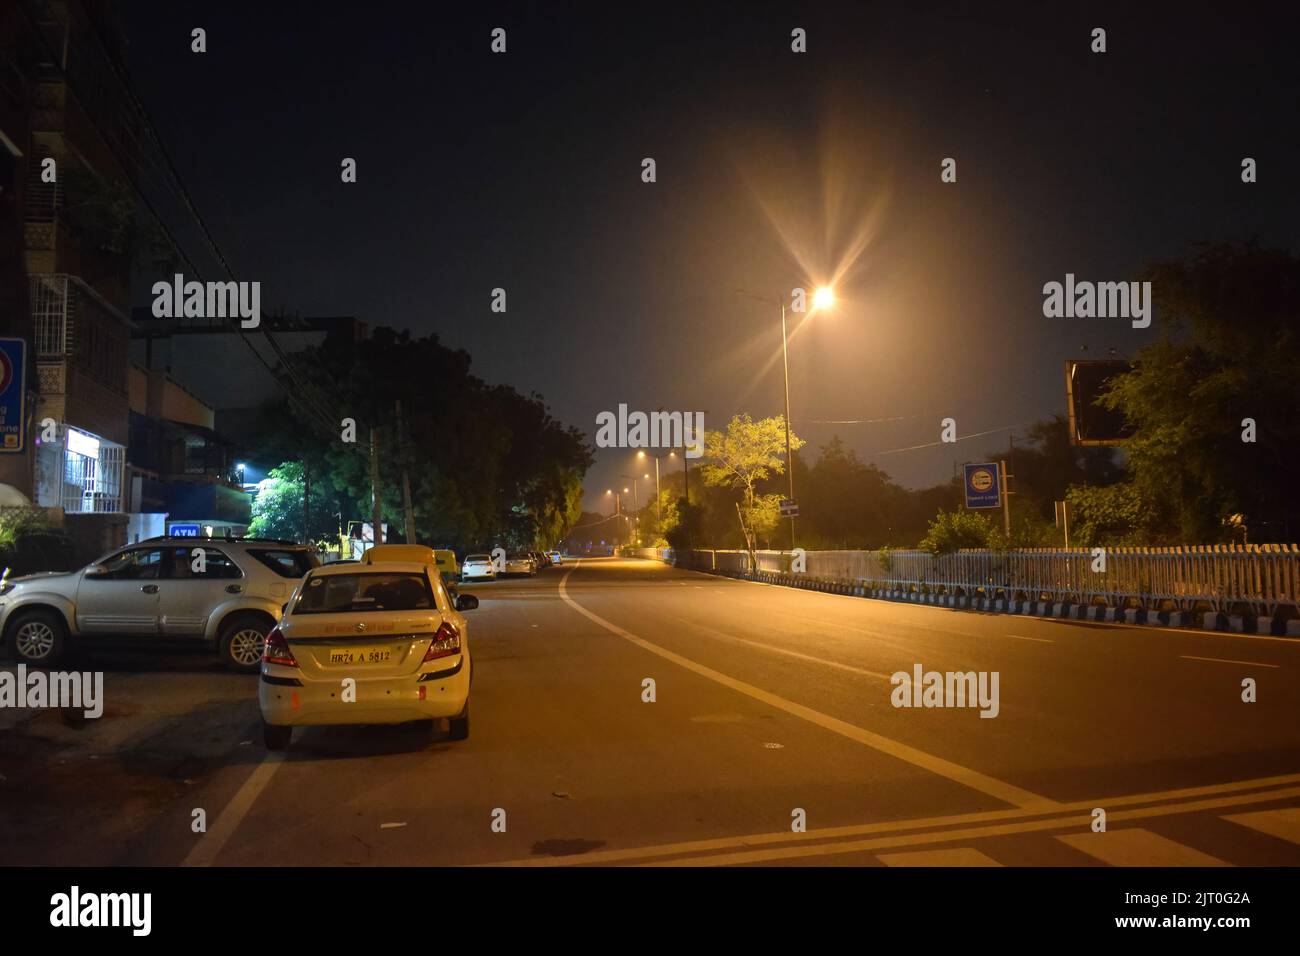 Vista nocturna de una calle vacía en Nueva delhi, India. Foto de stock